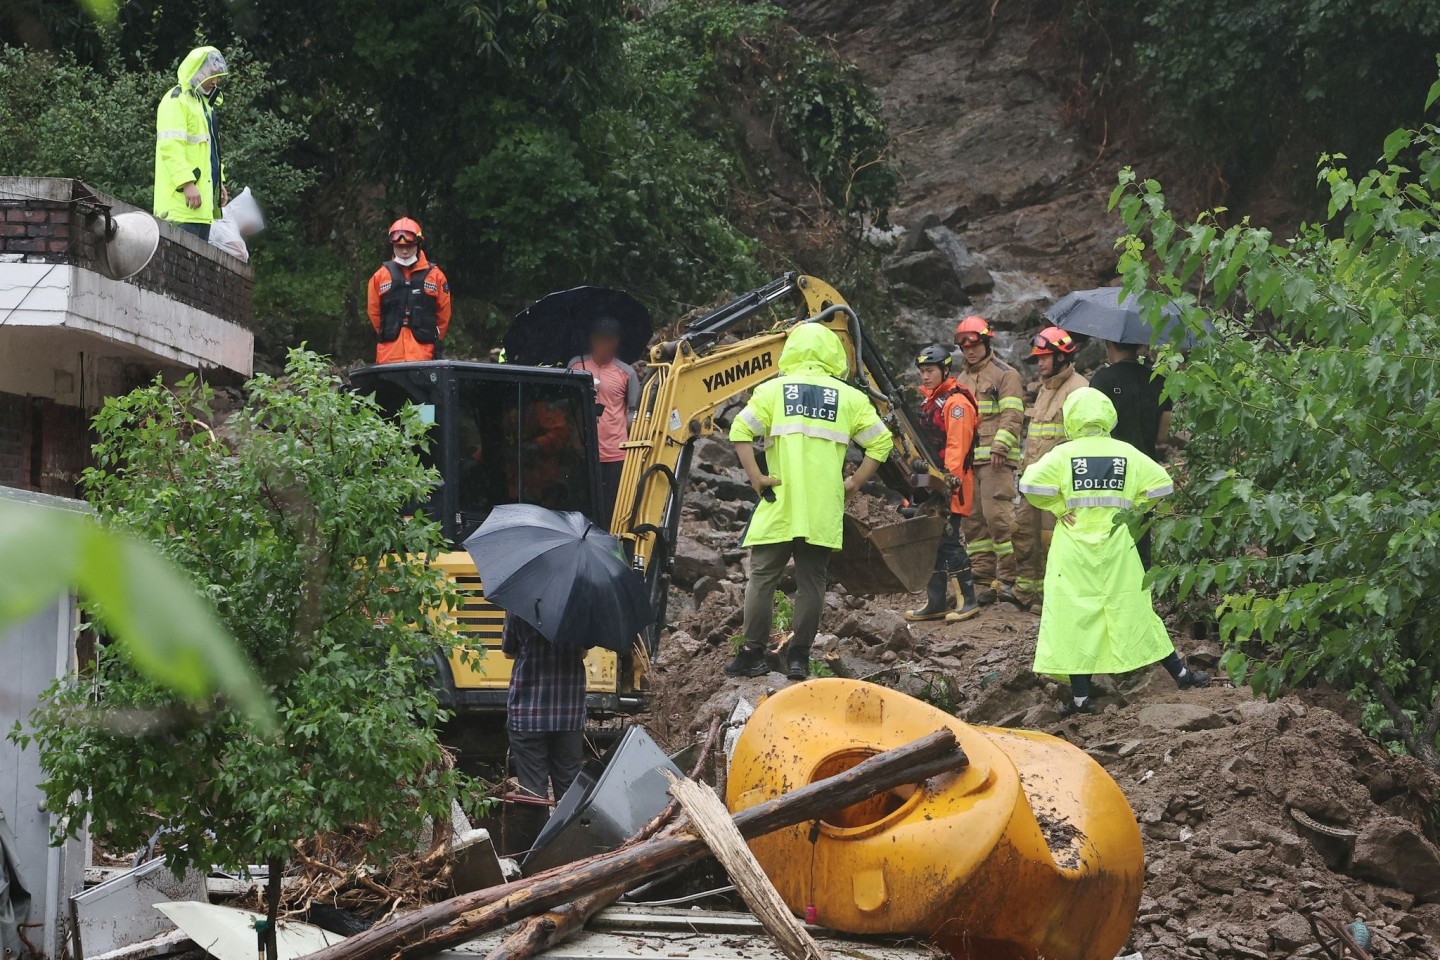 Rettungskräfte suchen in Gwangju nach zwei Menschen, die nach sintflutartigen Regenfällen vermisst werden.